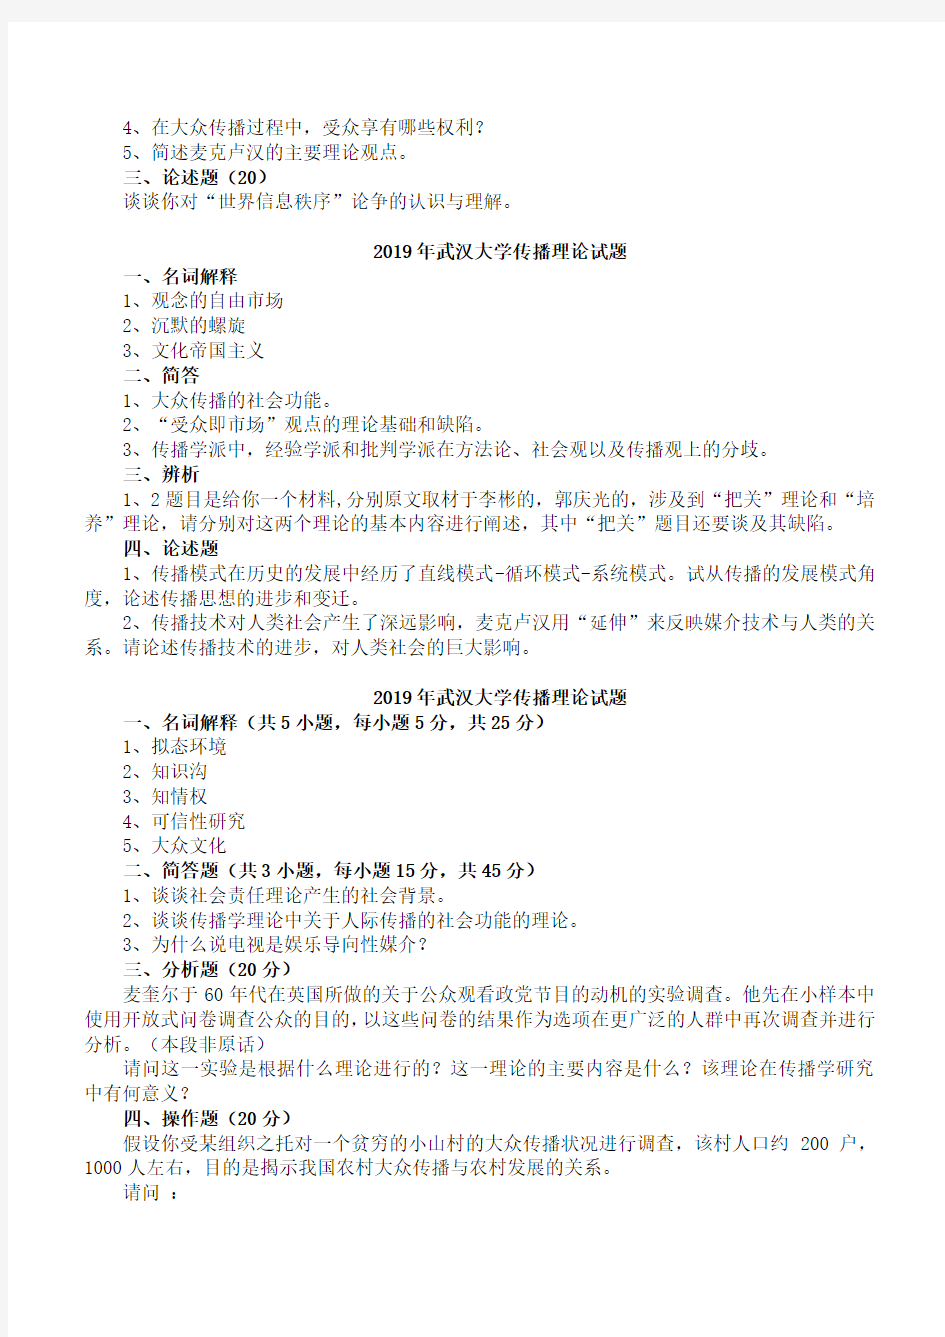 武汉大学新闻与传播考研真题传播学部分(精心整理版)分析-共8页